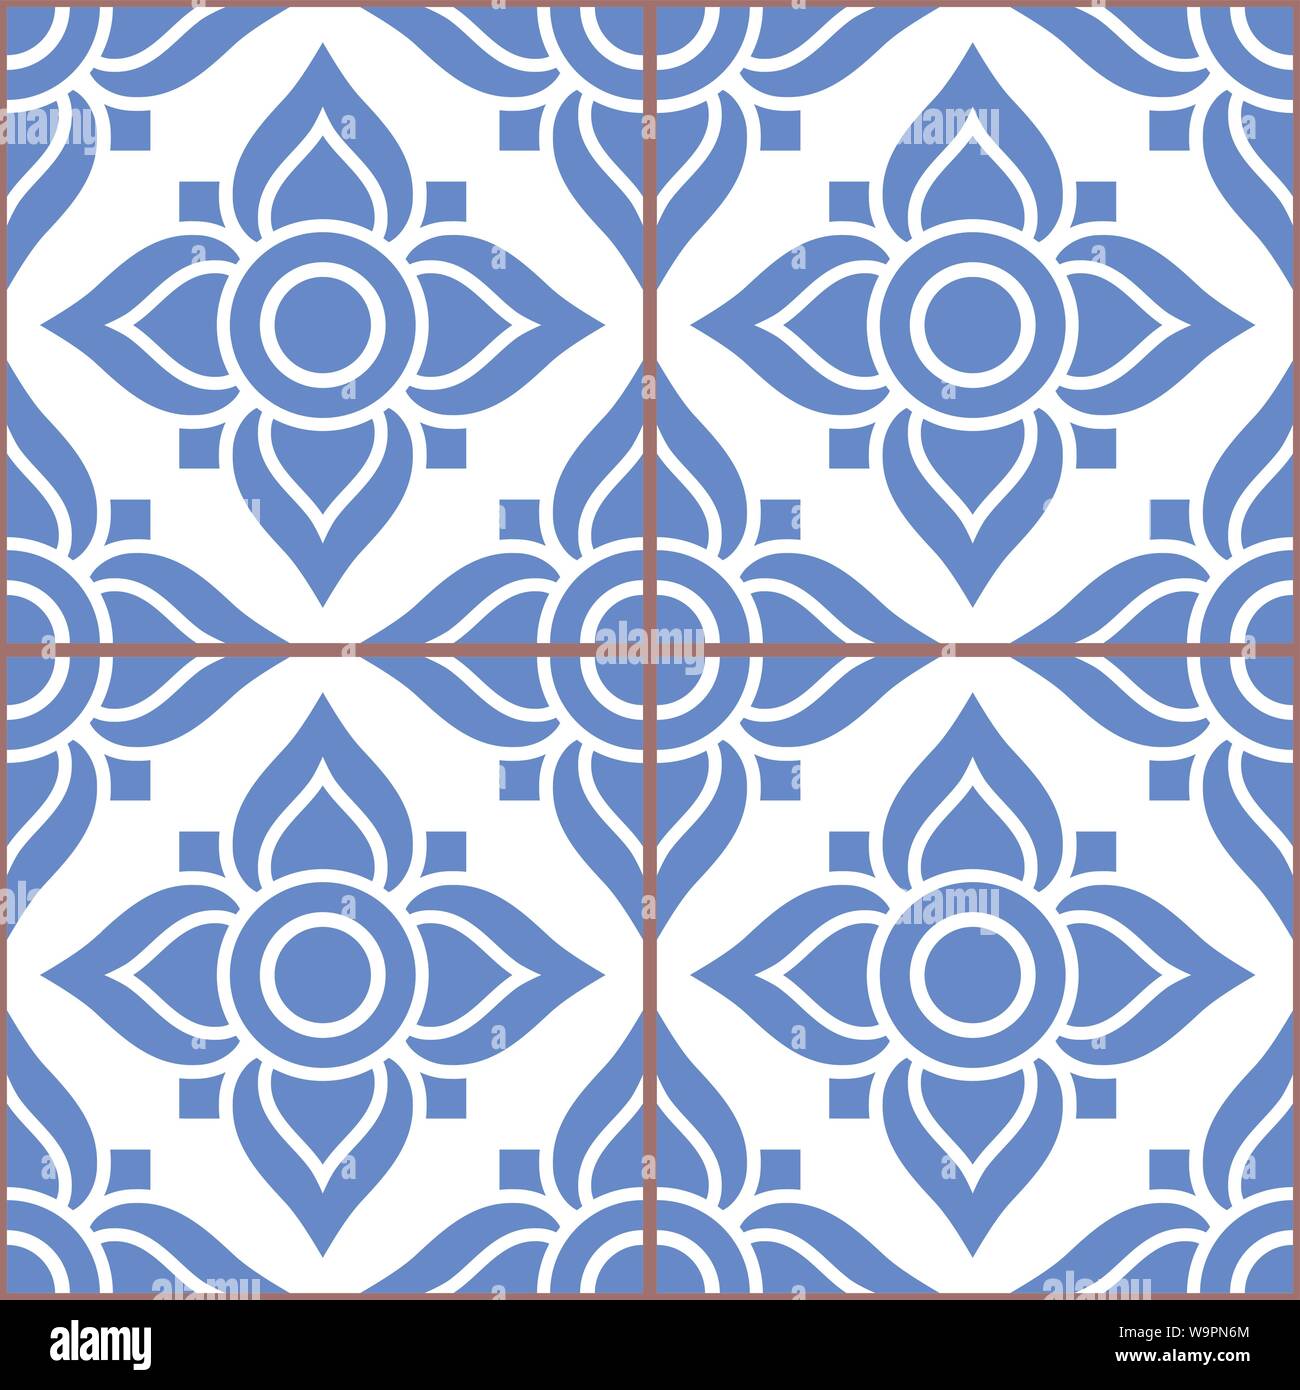 Azujelo Lisbon tile vector pattern - Lisbon tiles seamless design with flowers , tile decor in navy blue - Portuguese retro tile ornament, repetitve. Stock Vector